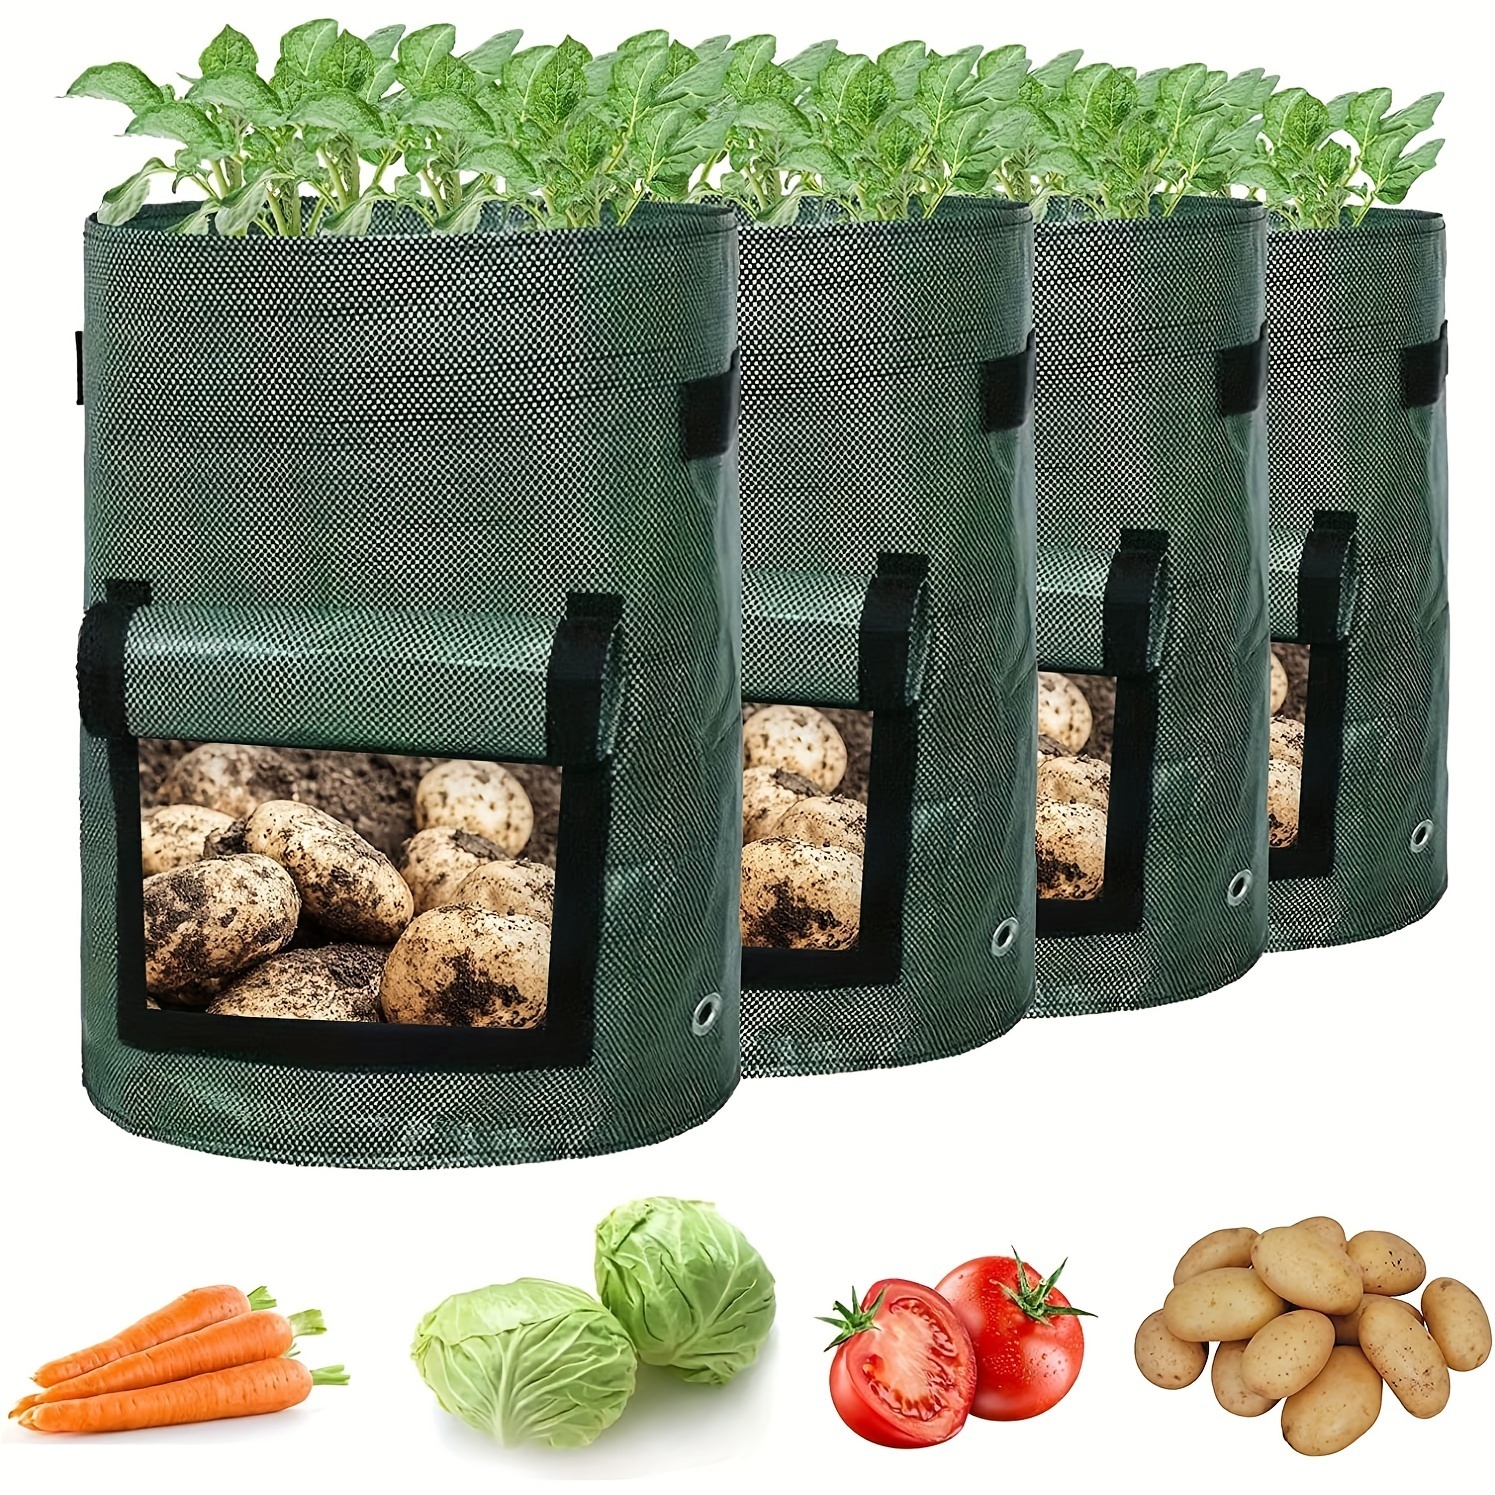 

4 sacs de culture de pommes de terre, planteurs de pommes de terre avec rabat et poignées, sacs de plantation de légumes pour oignon, fruits, tomate, carotte (7 gallons)